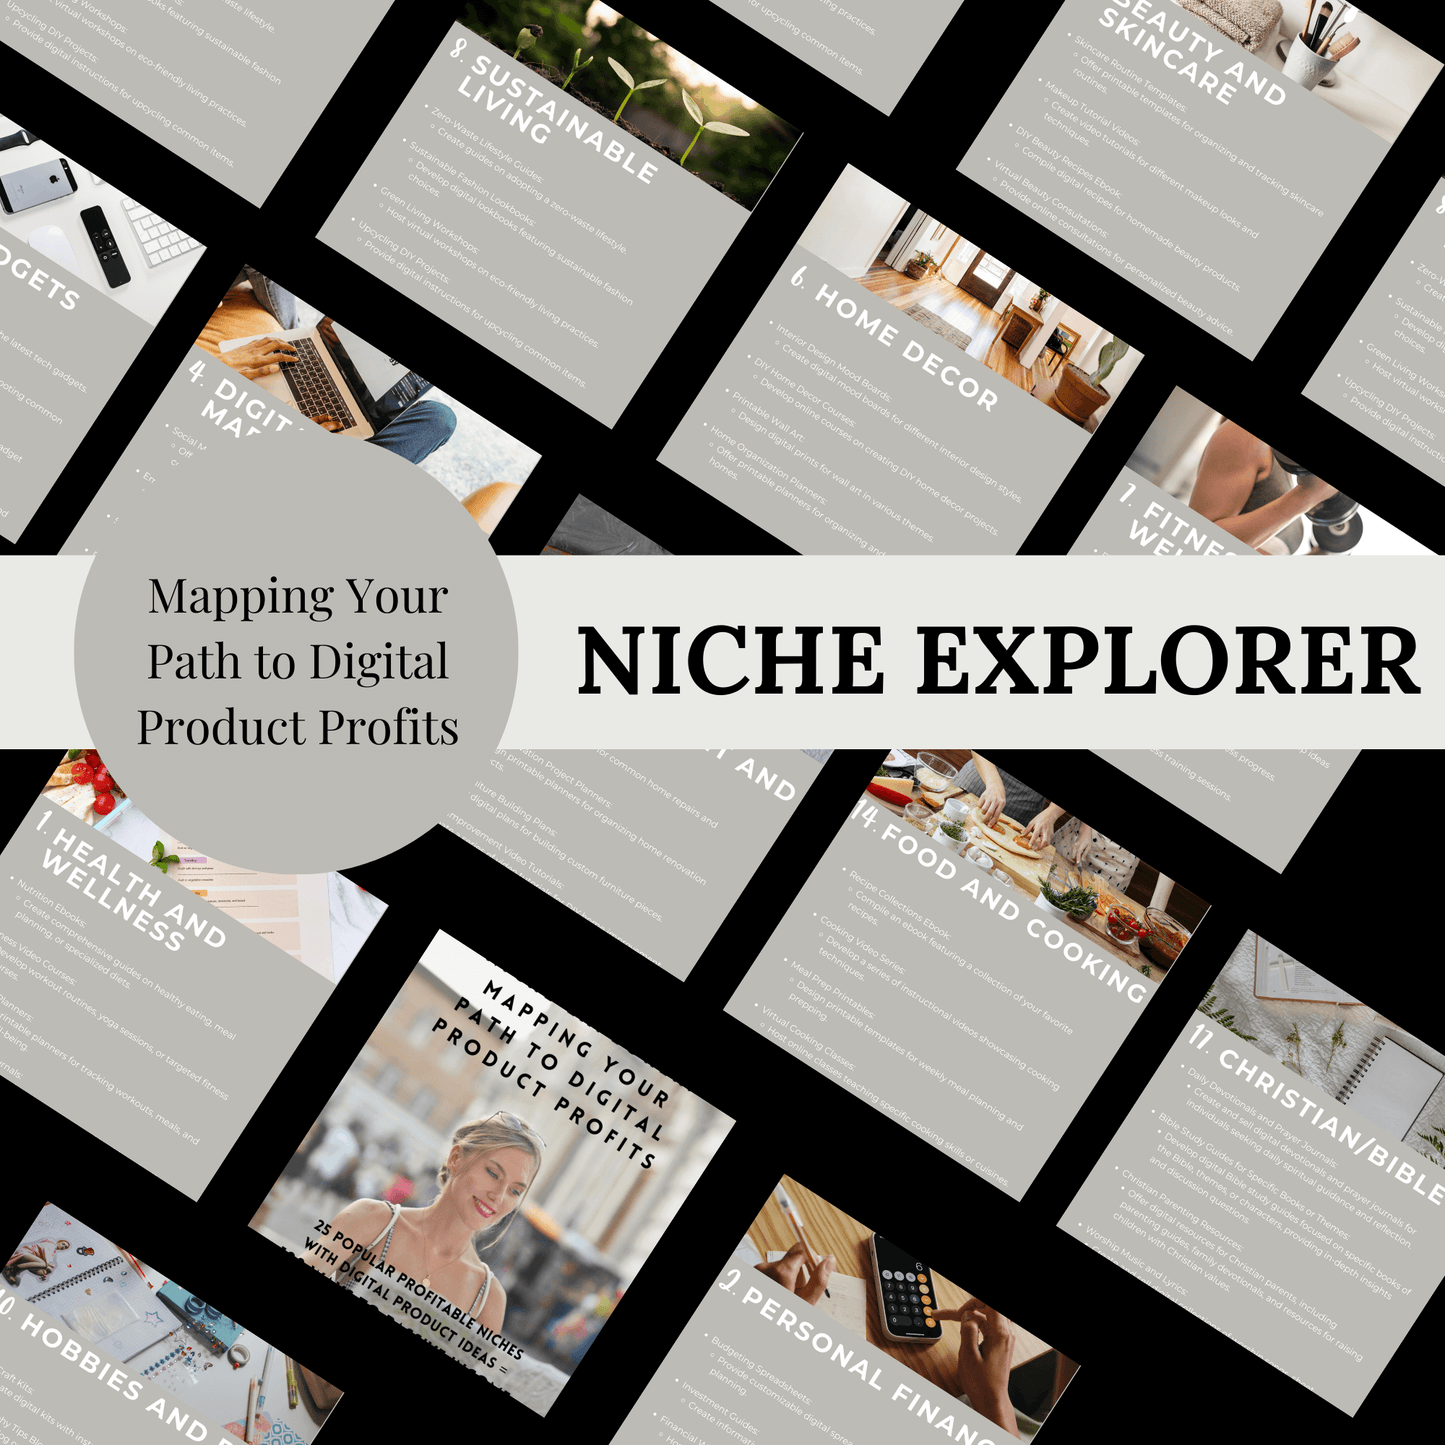 Niche Explorer: Finding Your Niche with 25 Ideas + 100 Digital Prouduct Ideas Handbook Volume 1